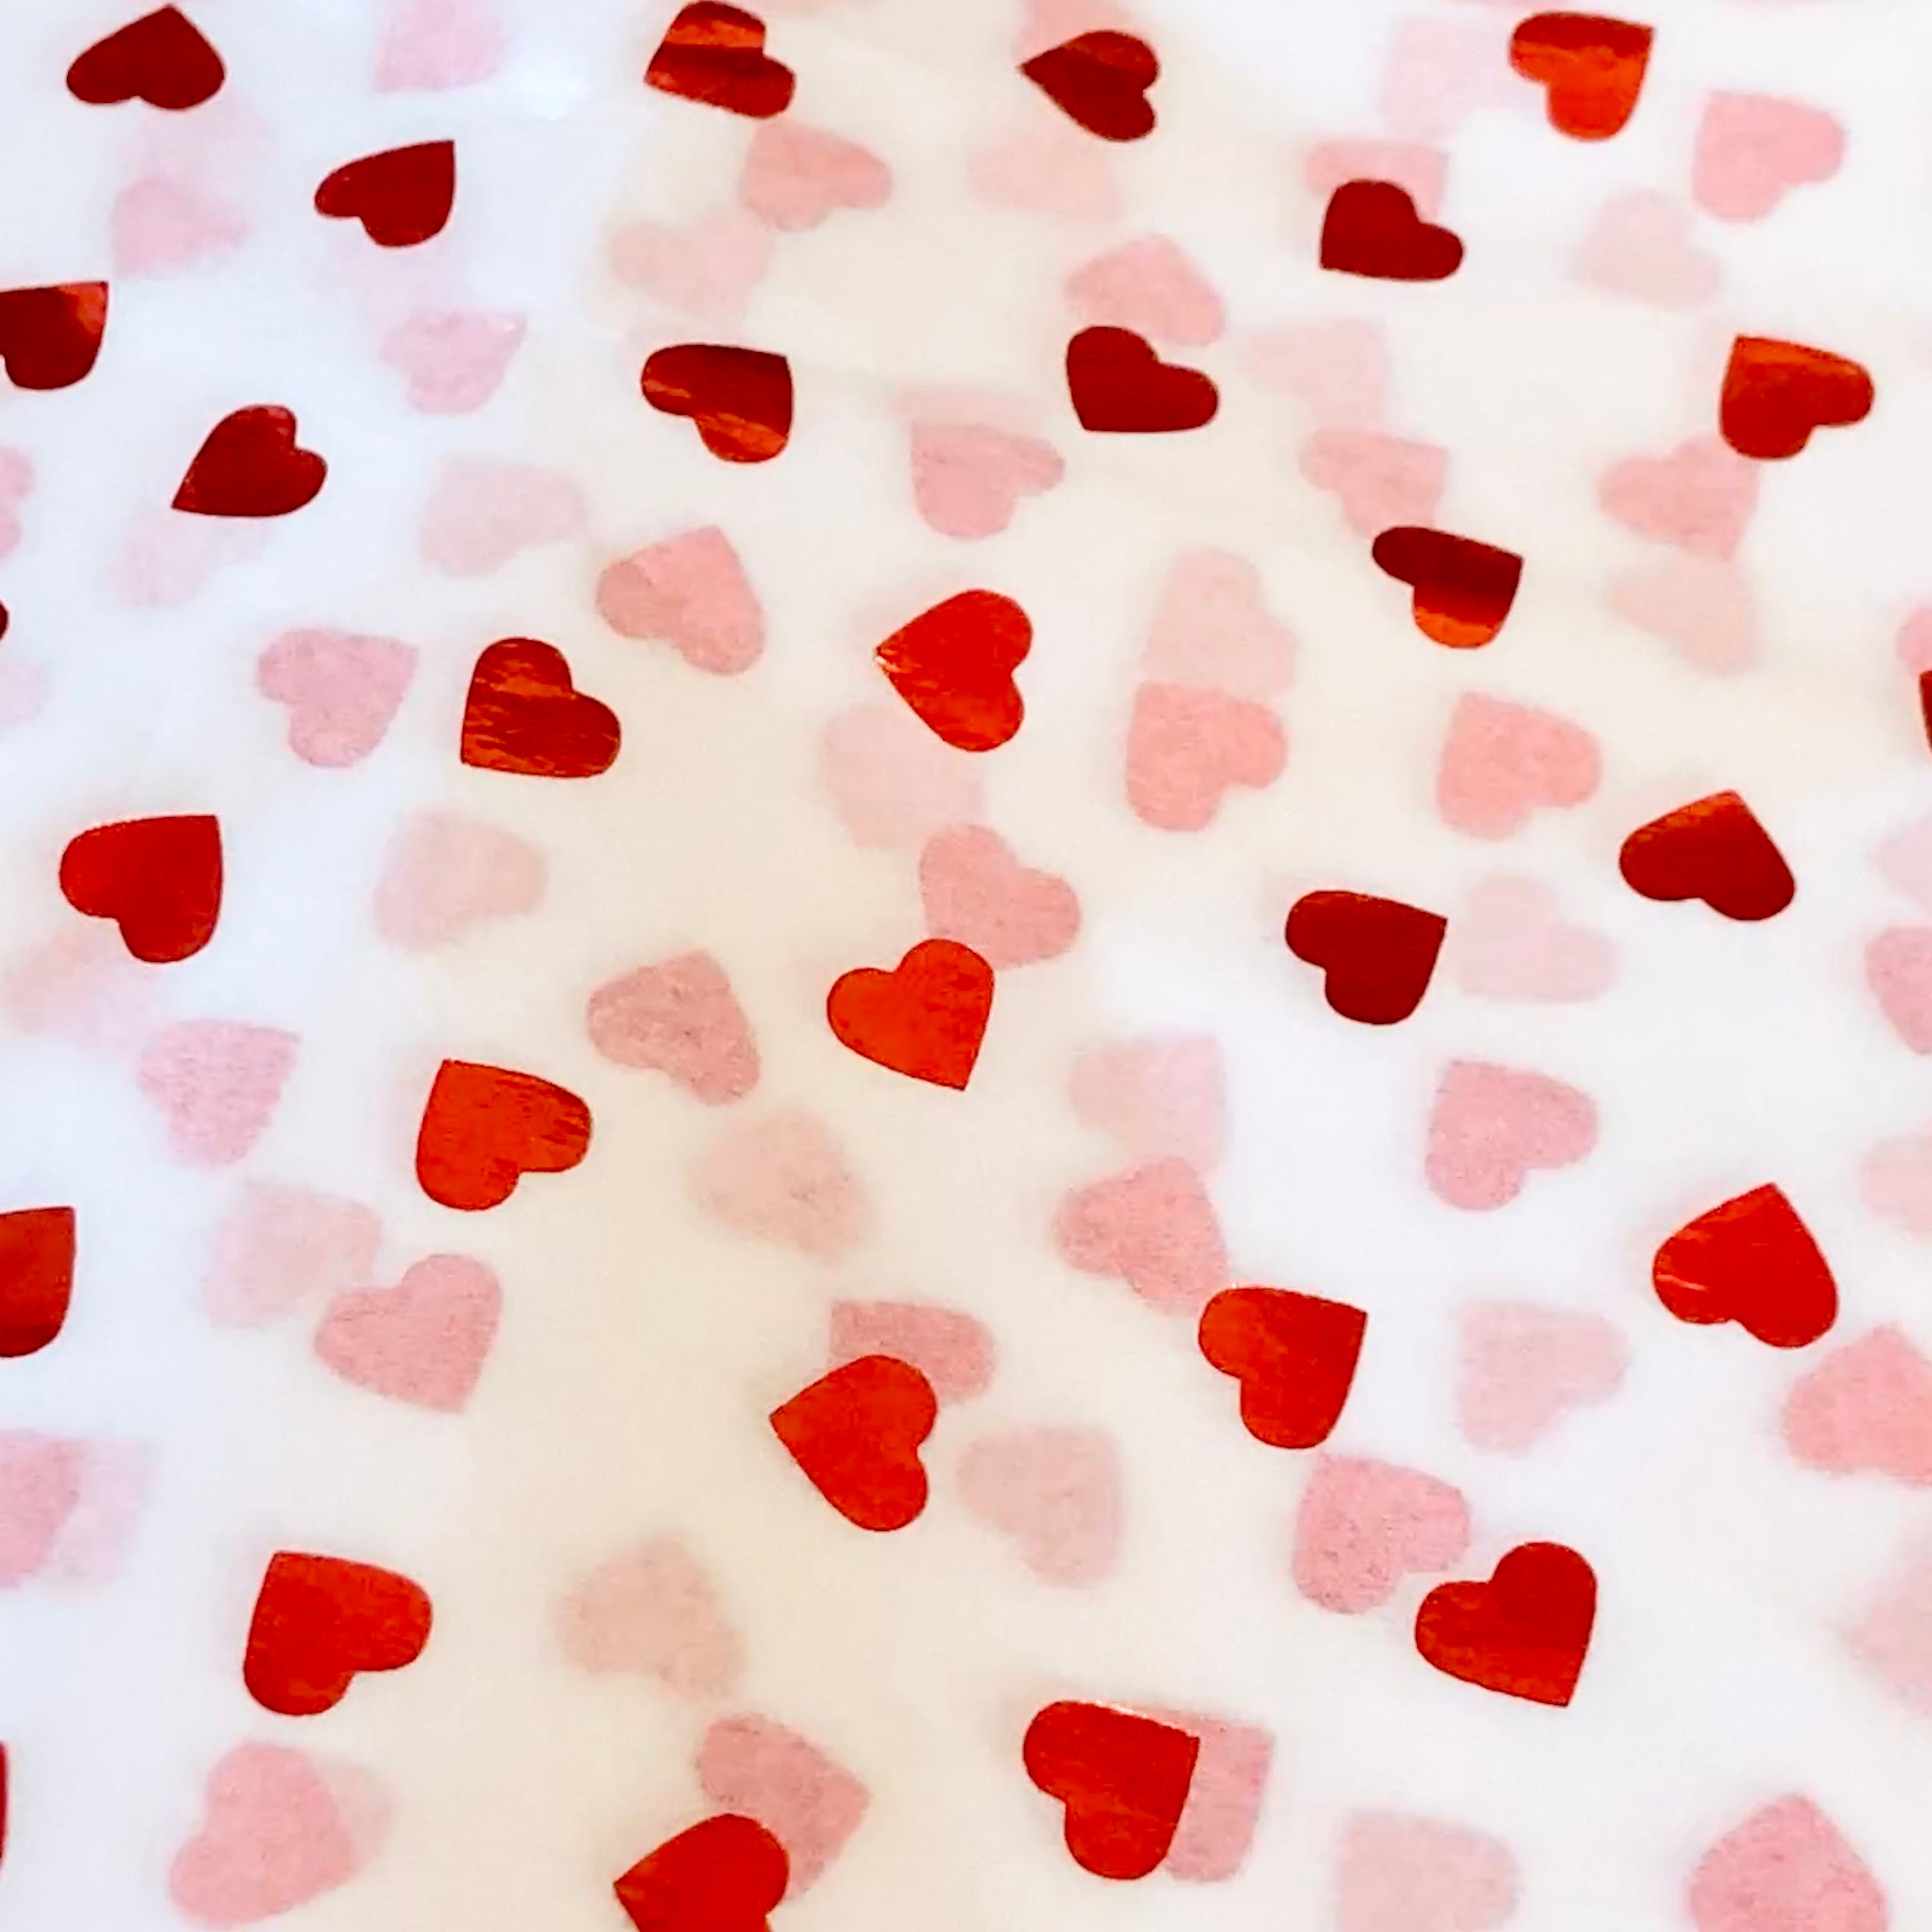 5 x feuilles de papier de soie imprimé coeur rouge brillant mariage,  anniversaire occasions spéciales papier d'emballage cadeau, emballage cadeau  de luxe écologique. -  France